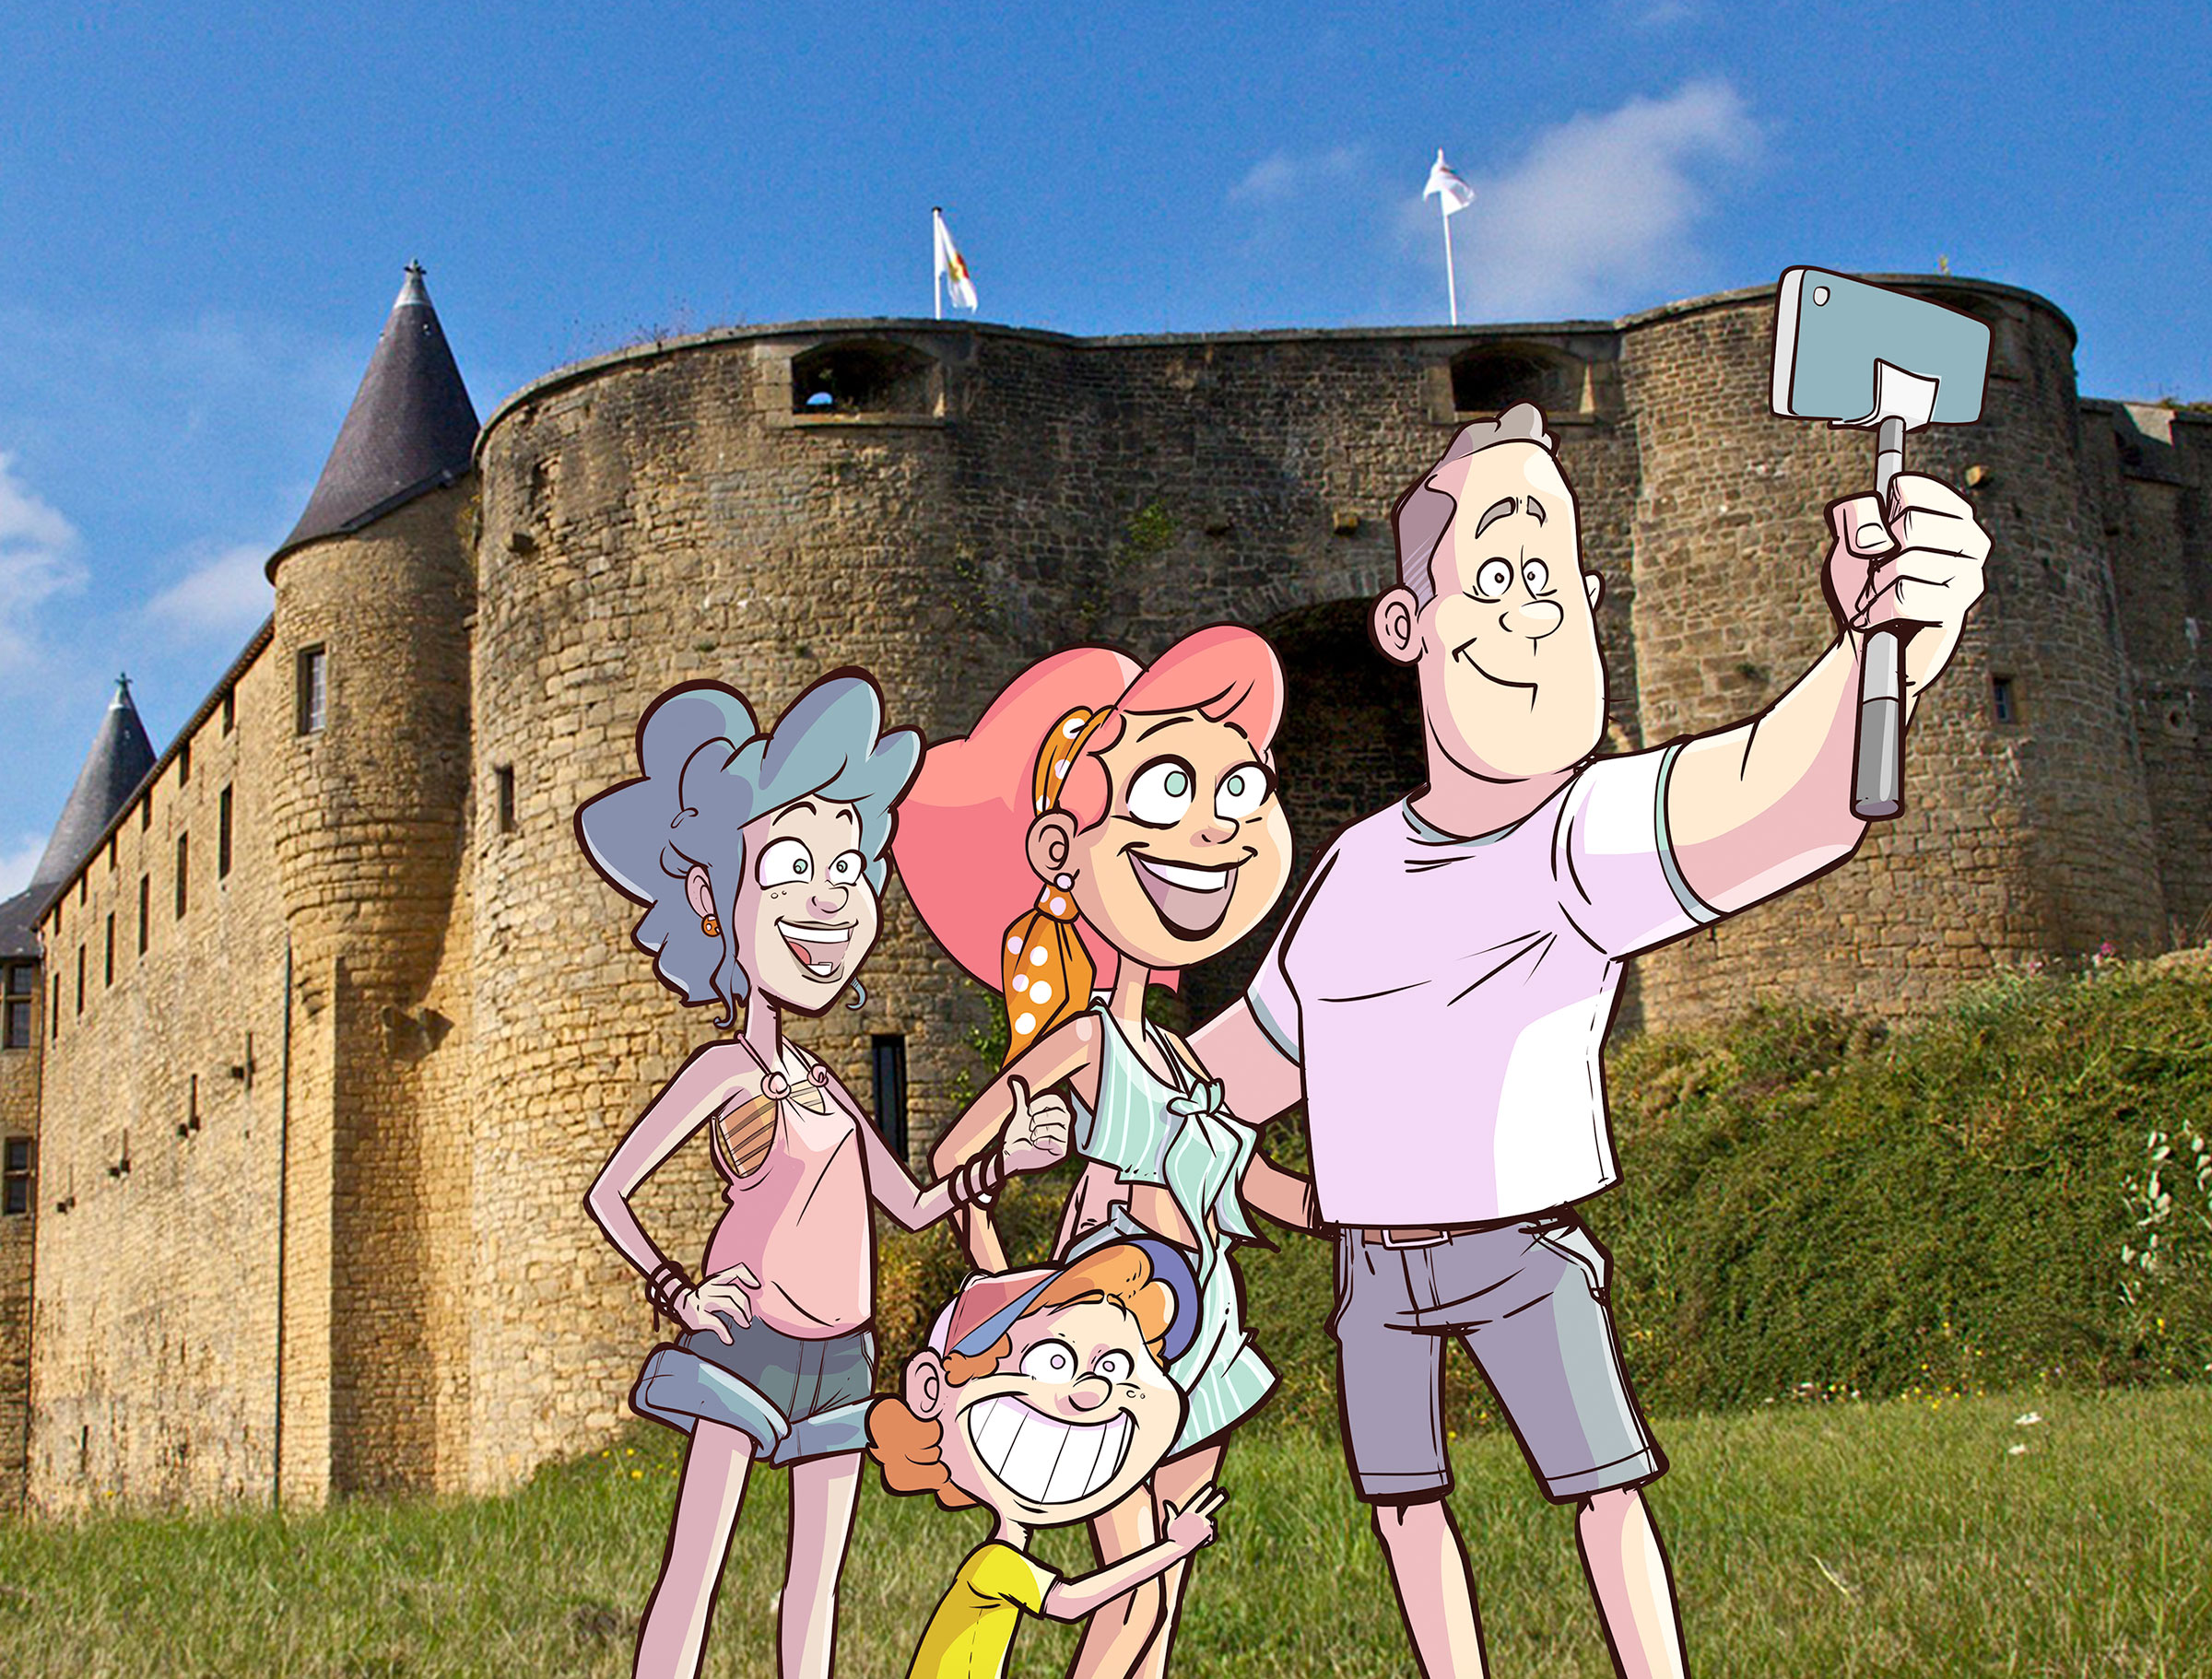 Chateau de sedan famille selfie